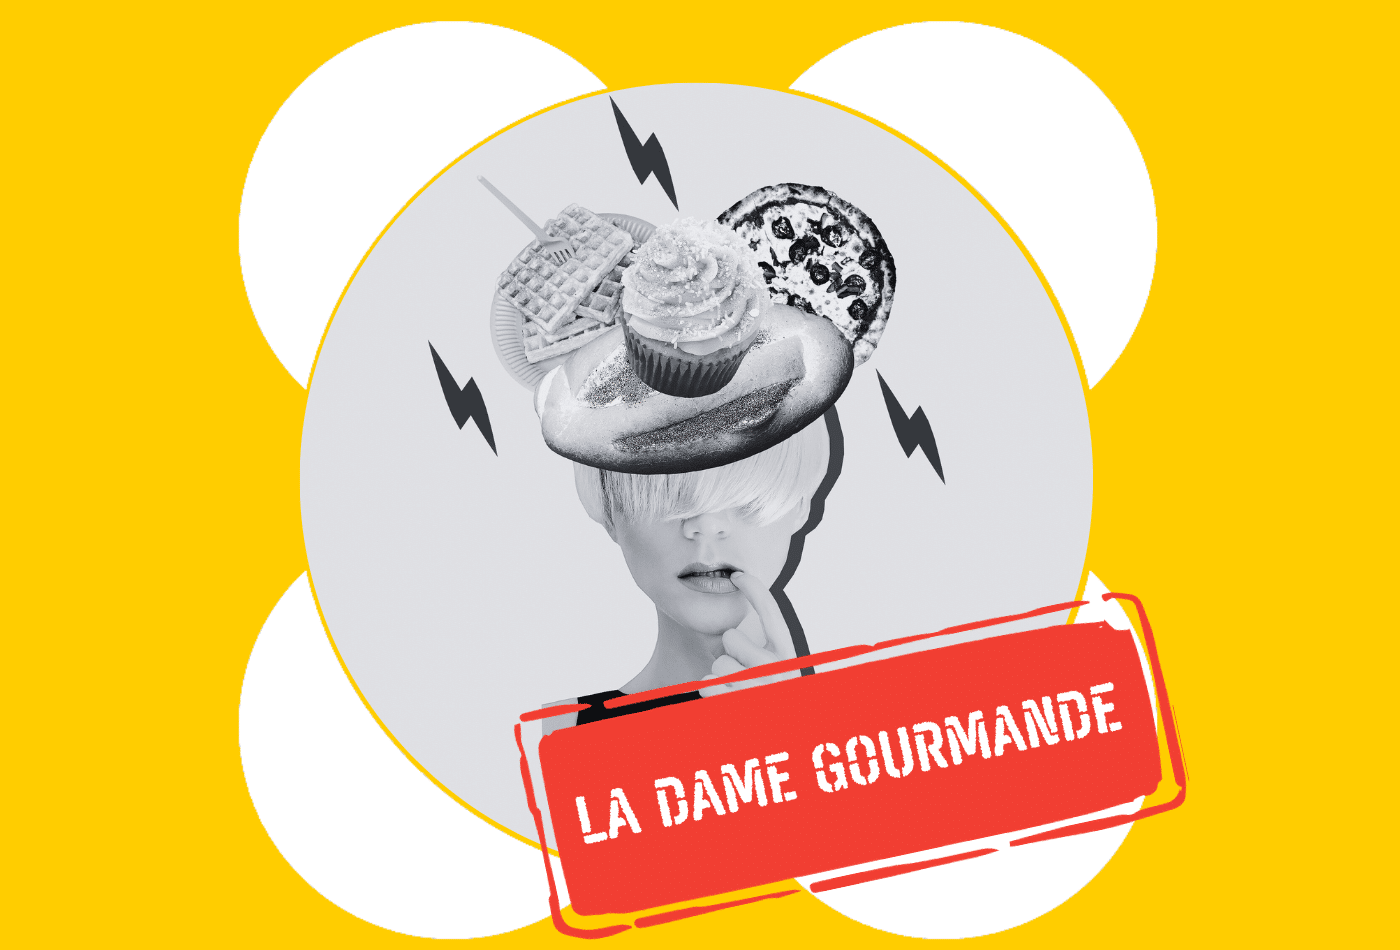 Faceți cunoștință cu La Dame Gourmande, recenzorul nostru anonim 😊